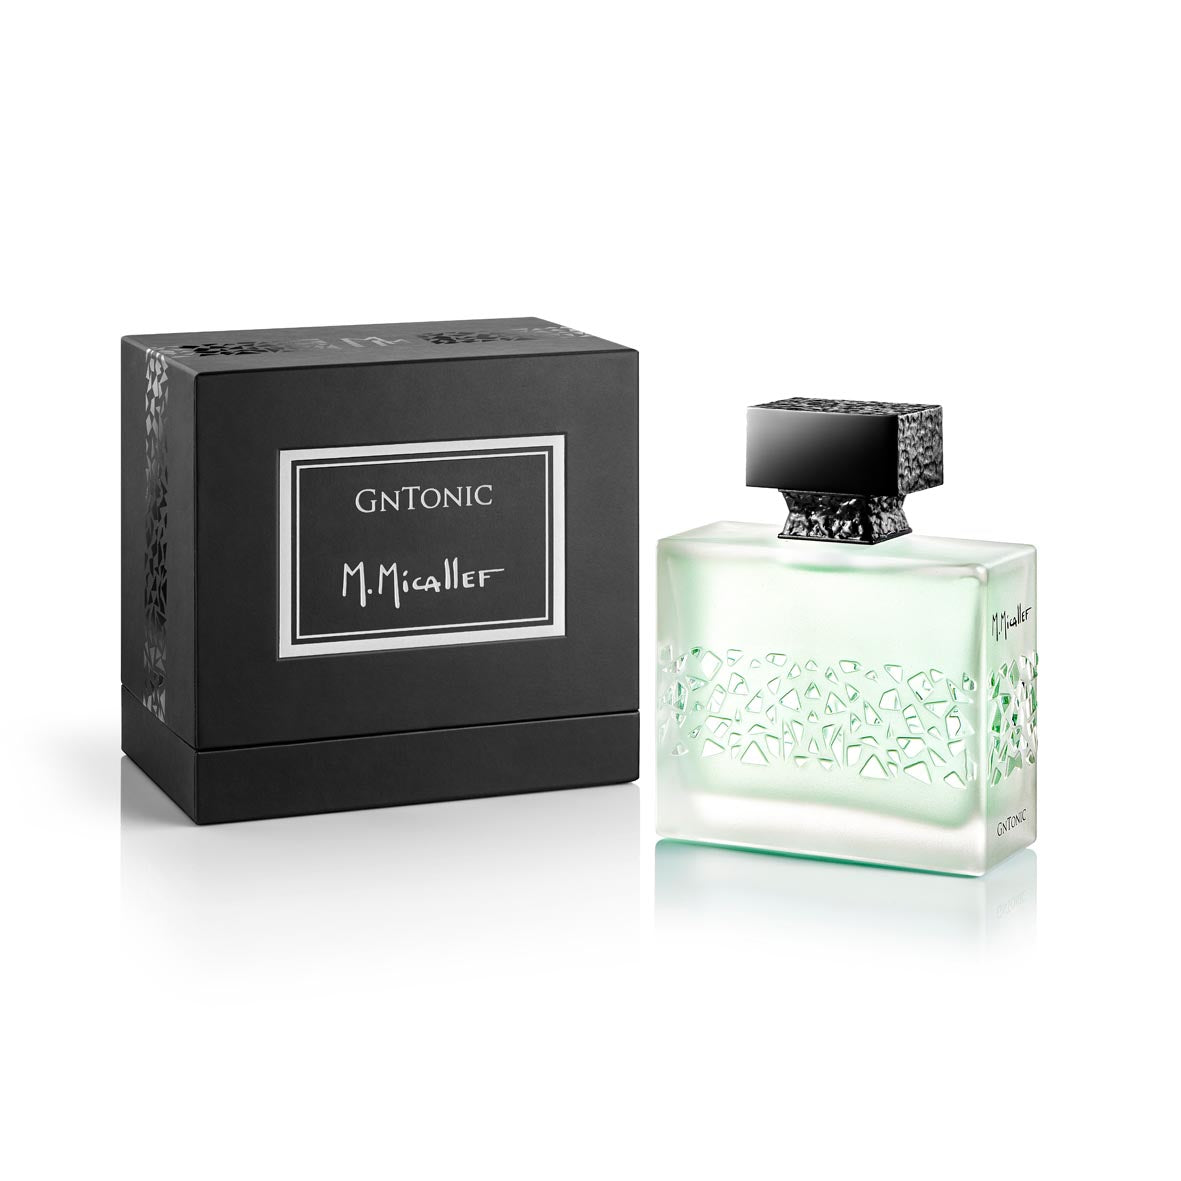 GnTonic 100ml Eau de Parfum with Box by Parfums M.Micallef